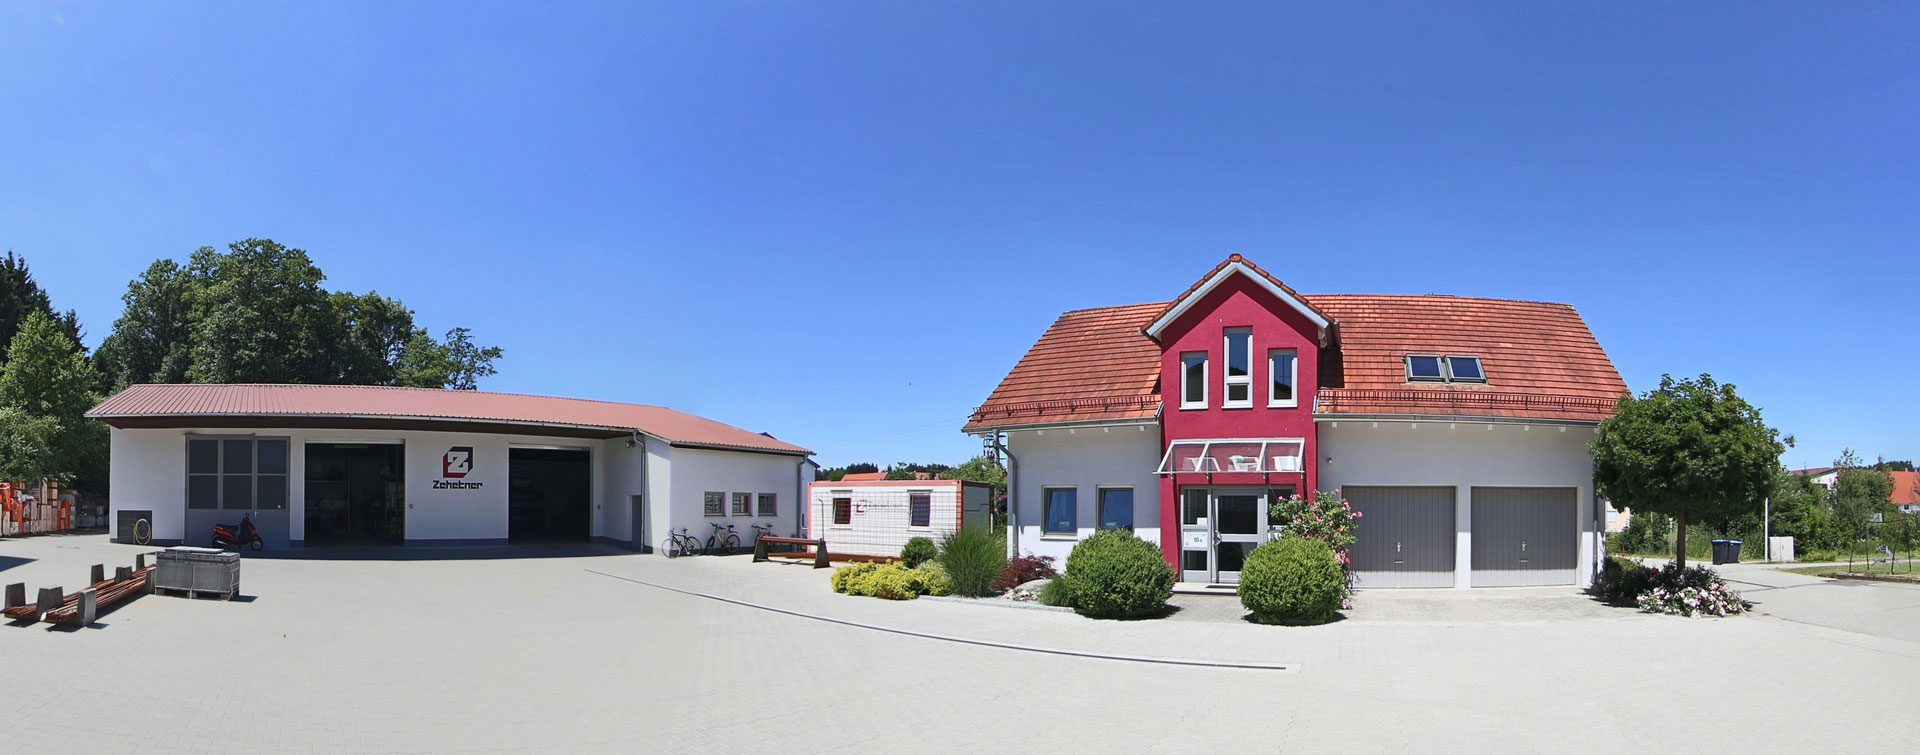 Planung und Bau von Häusern bei der Zehetner GmbH